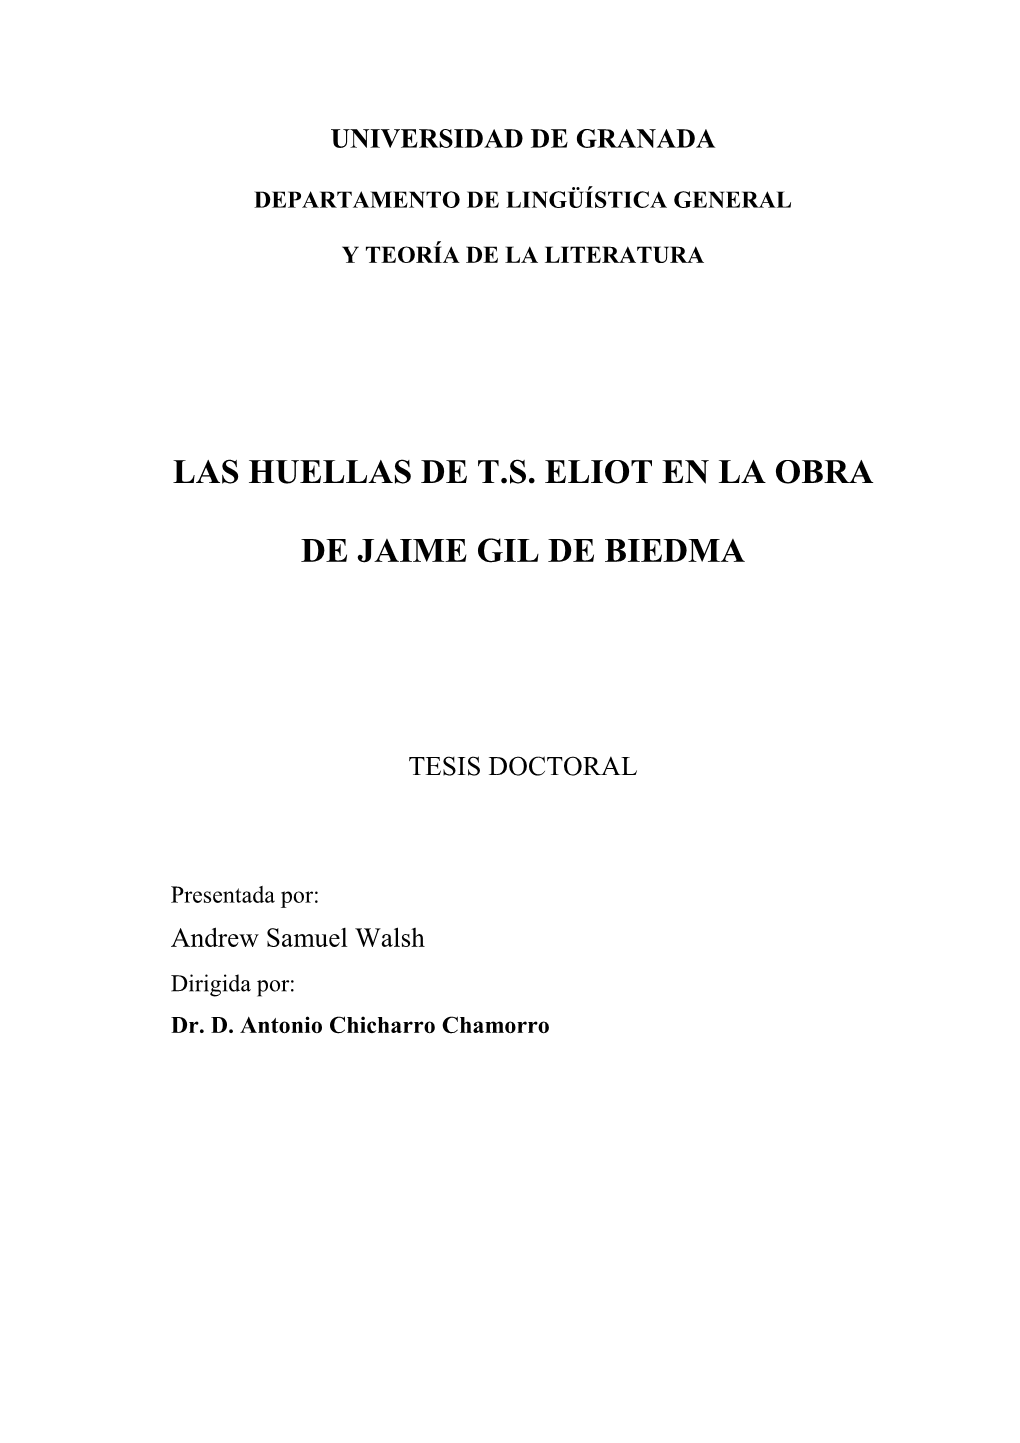 Las Huellas De T.S. Eliot En La Obra De Jaime Gil De Biedma Son Profundas, También Son Notables De Las De W.H